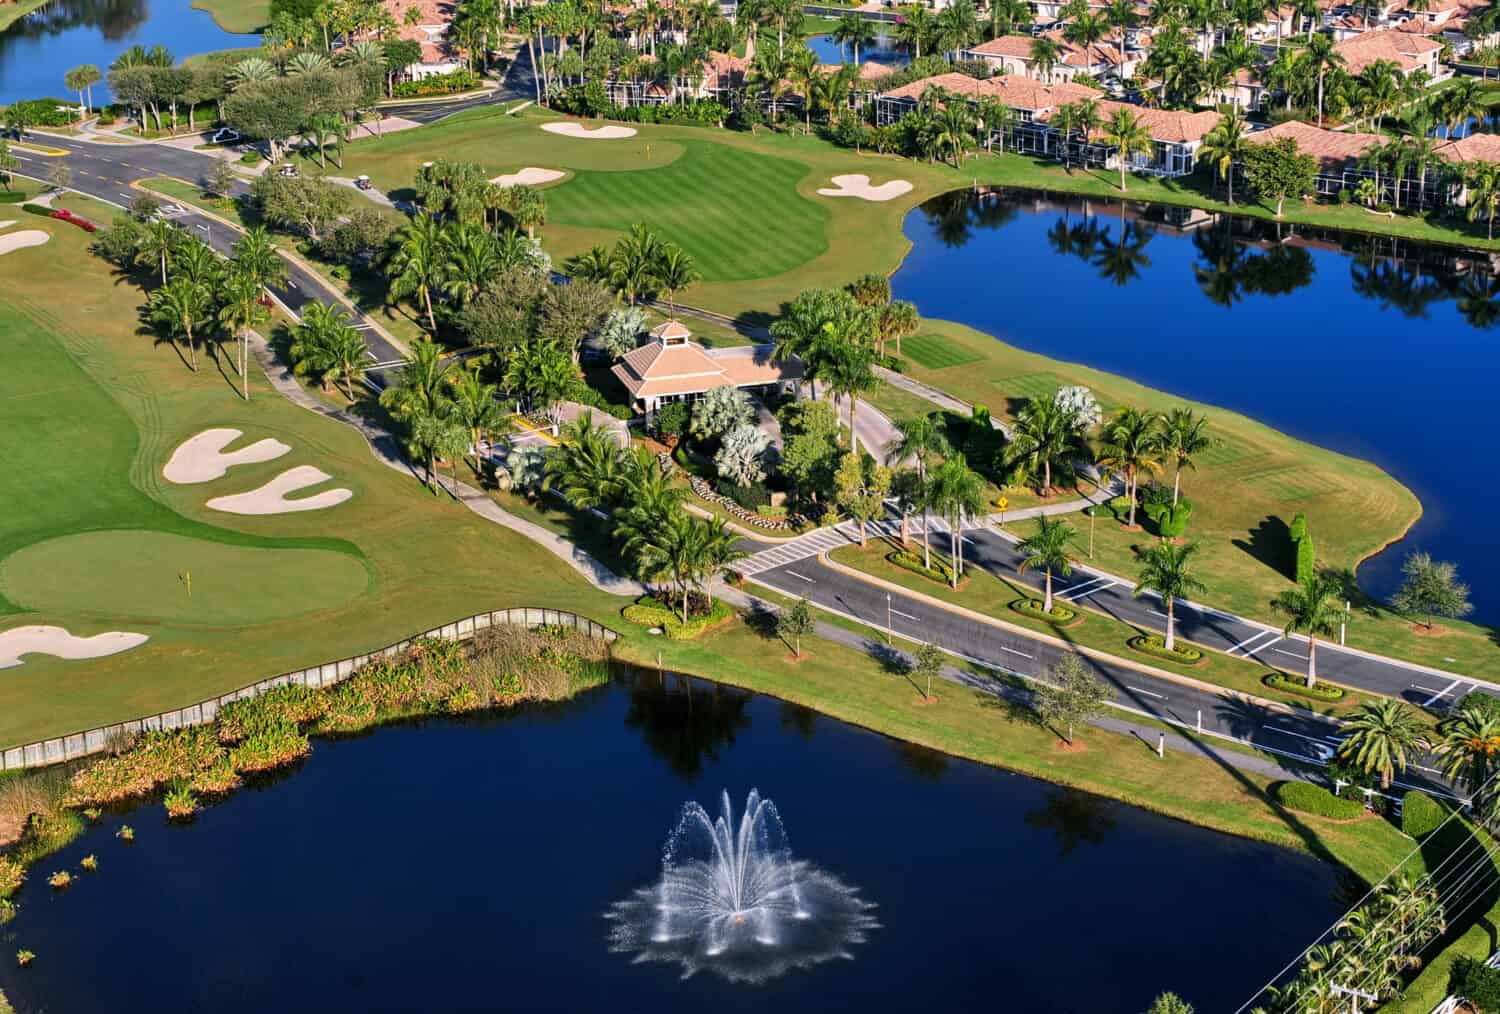 Vista aerea dell'ingresso al parco da golf della Florida simile a uno dei tanti campi da golf che si trovano nei villaggi in Florida.